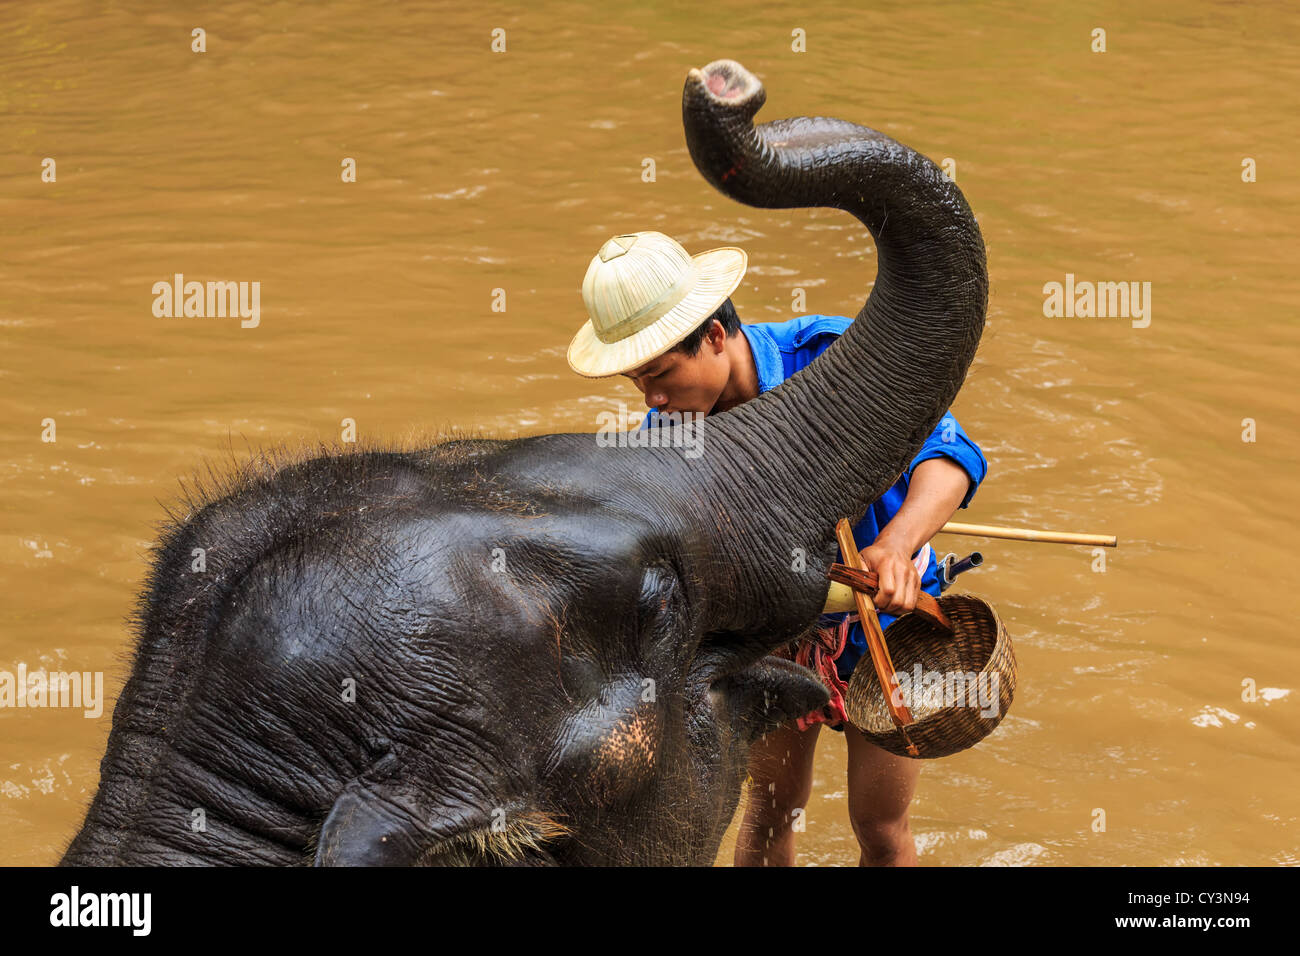 Mahout le nettoyage d'un éléphant dans une rivière, Chiang Mai, Thaïlande Banque D'Images